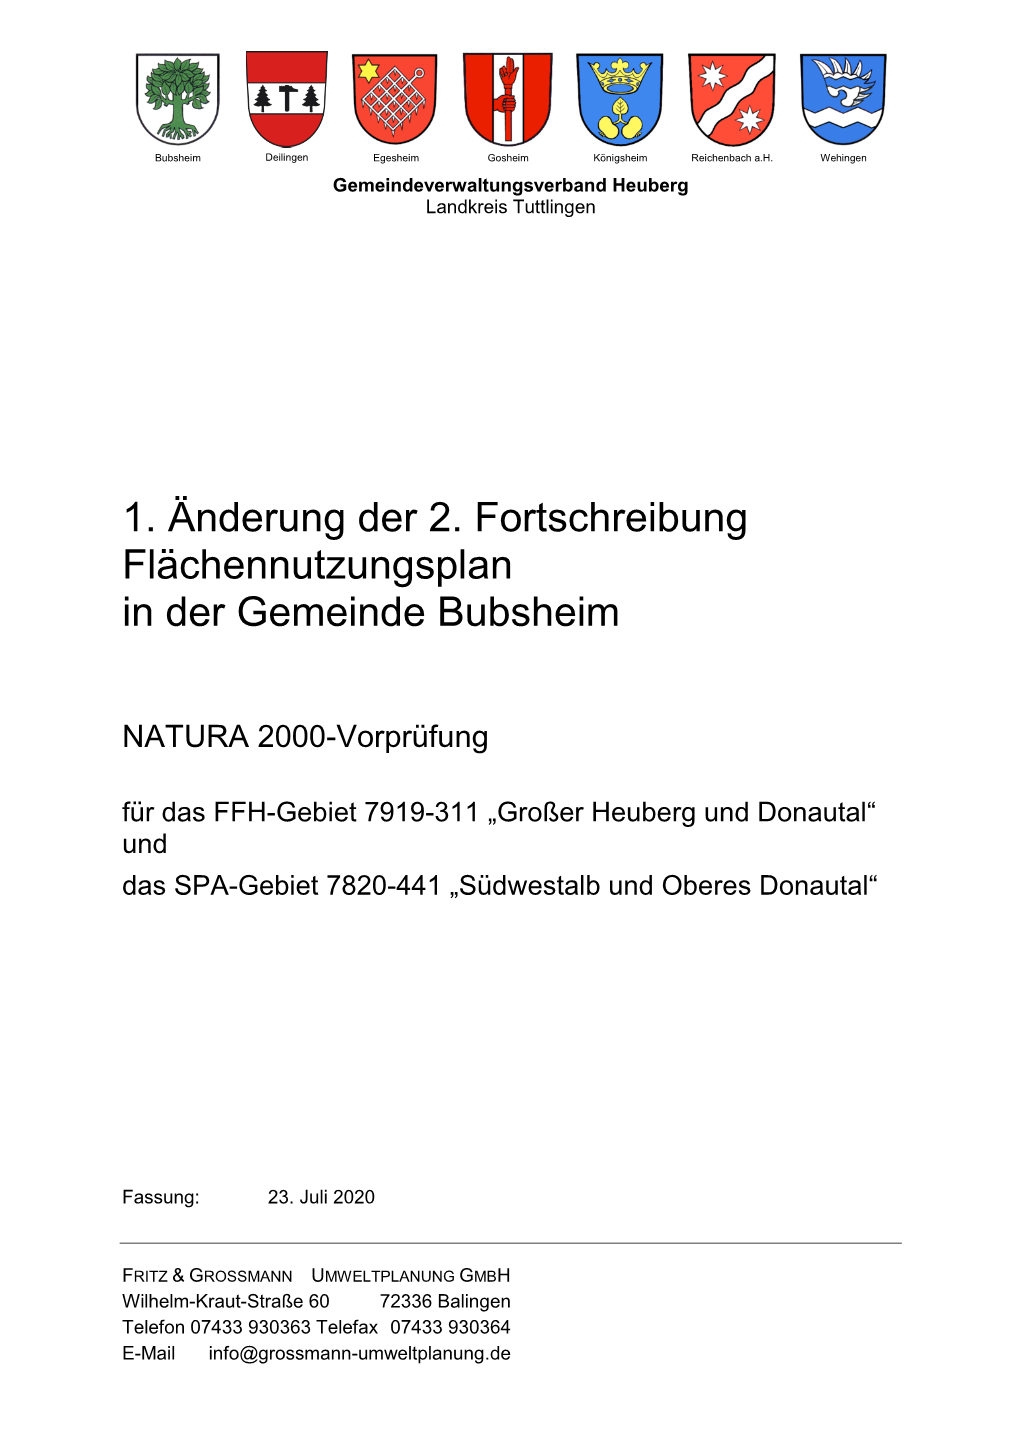 Gvvheuberg 2 Änderung FNP Nat2000vorprüfung